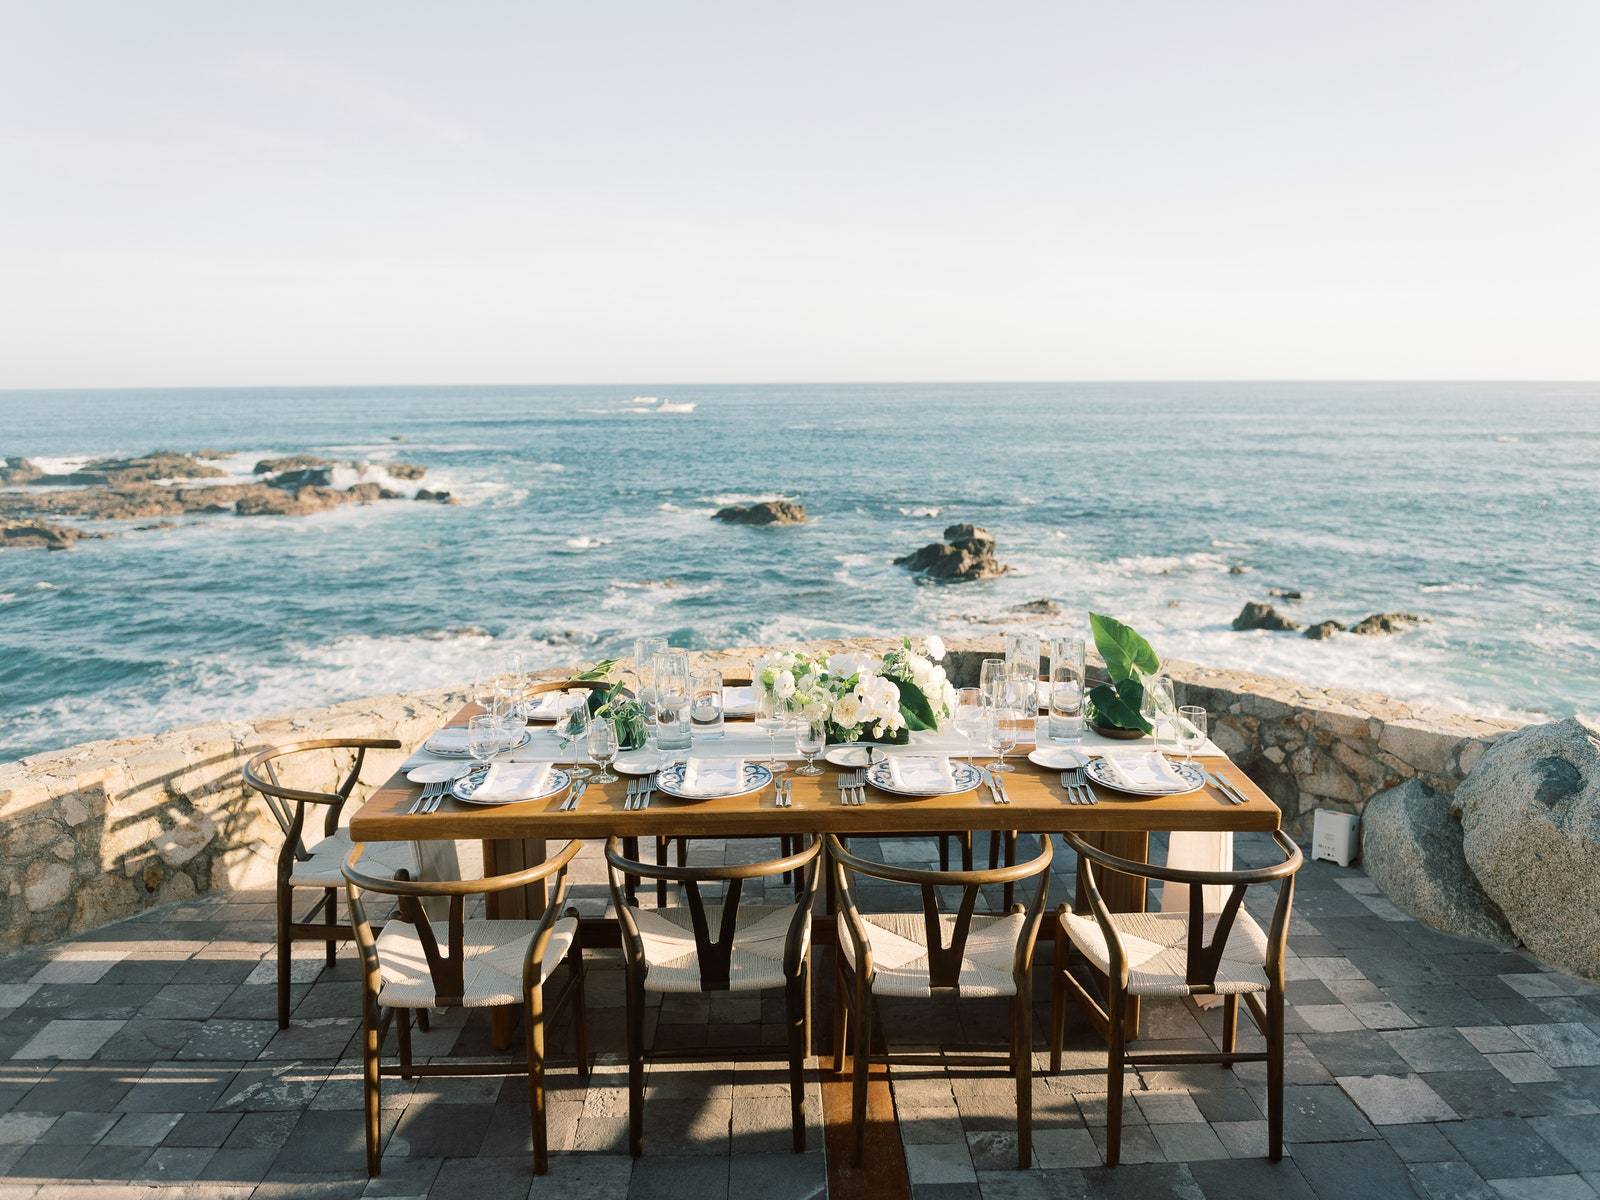 Każdy stół miał zapierający dech w piersiach widok na ocean. 